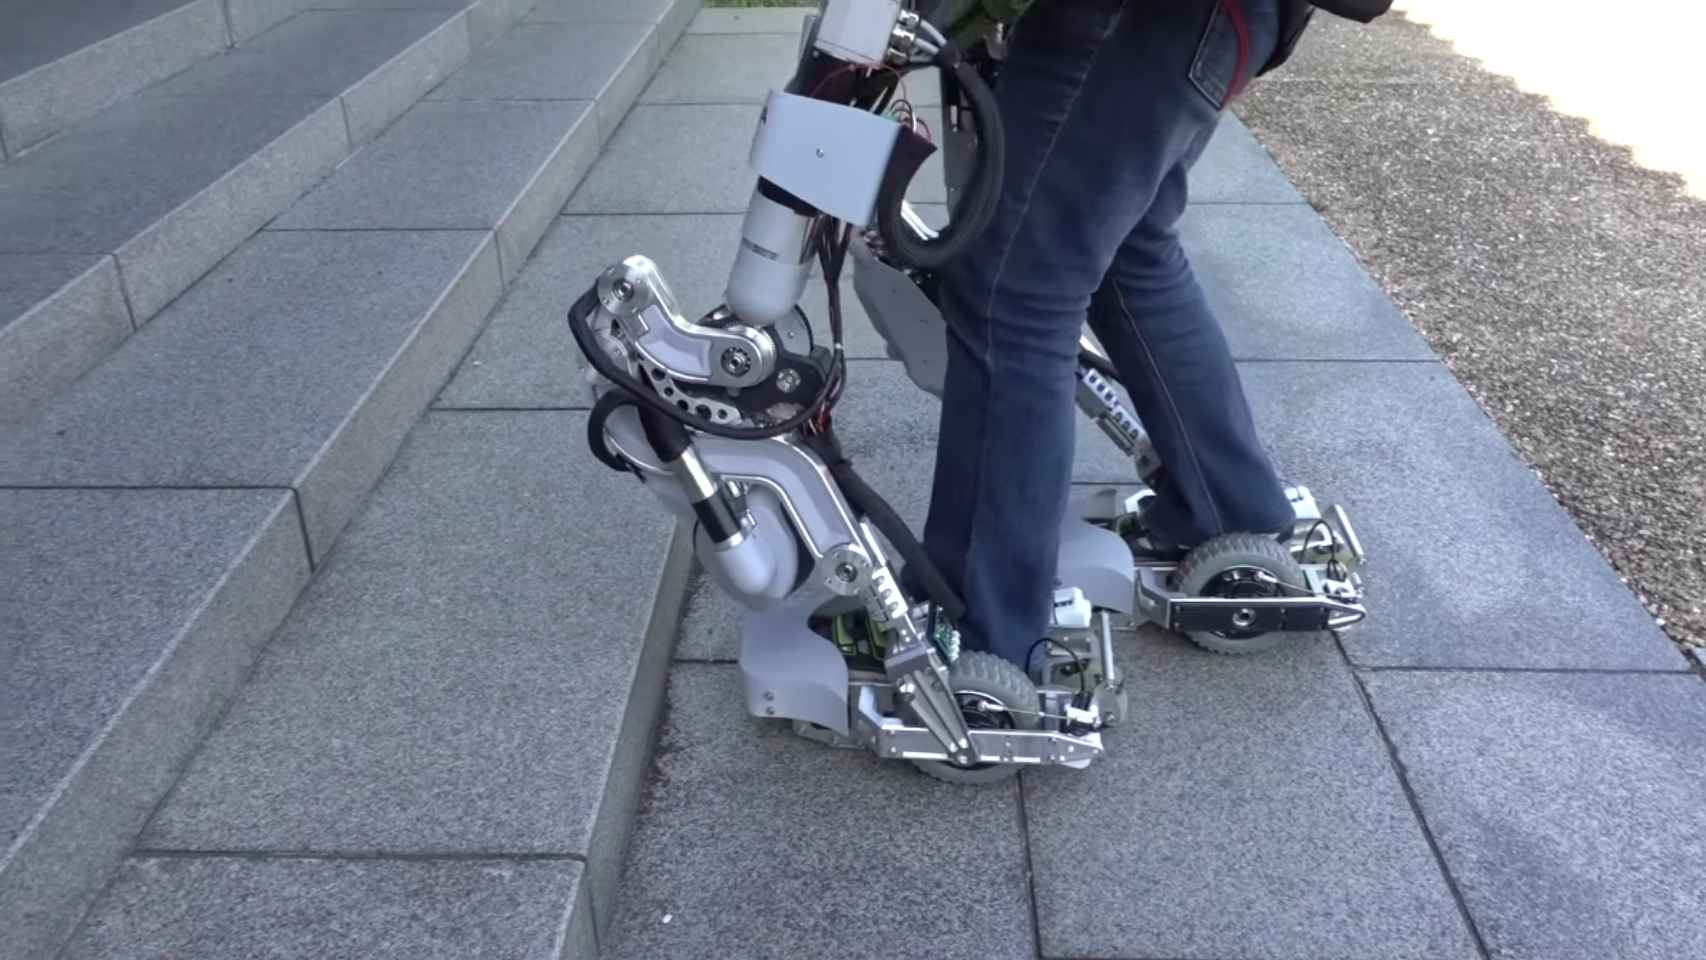 El exoesqueleto permite desde transportar objetos pesados hasta subir escaleras.